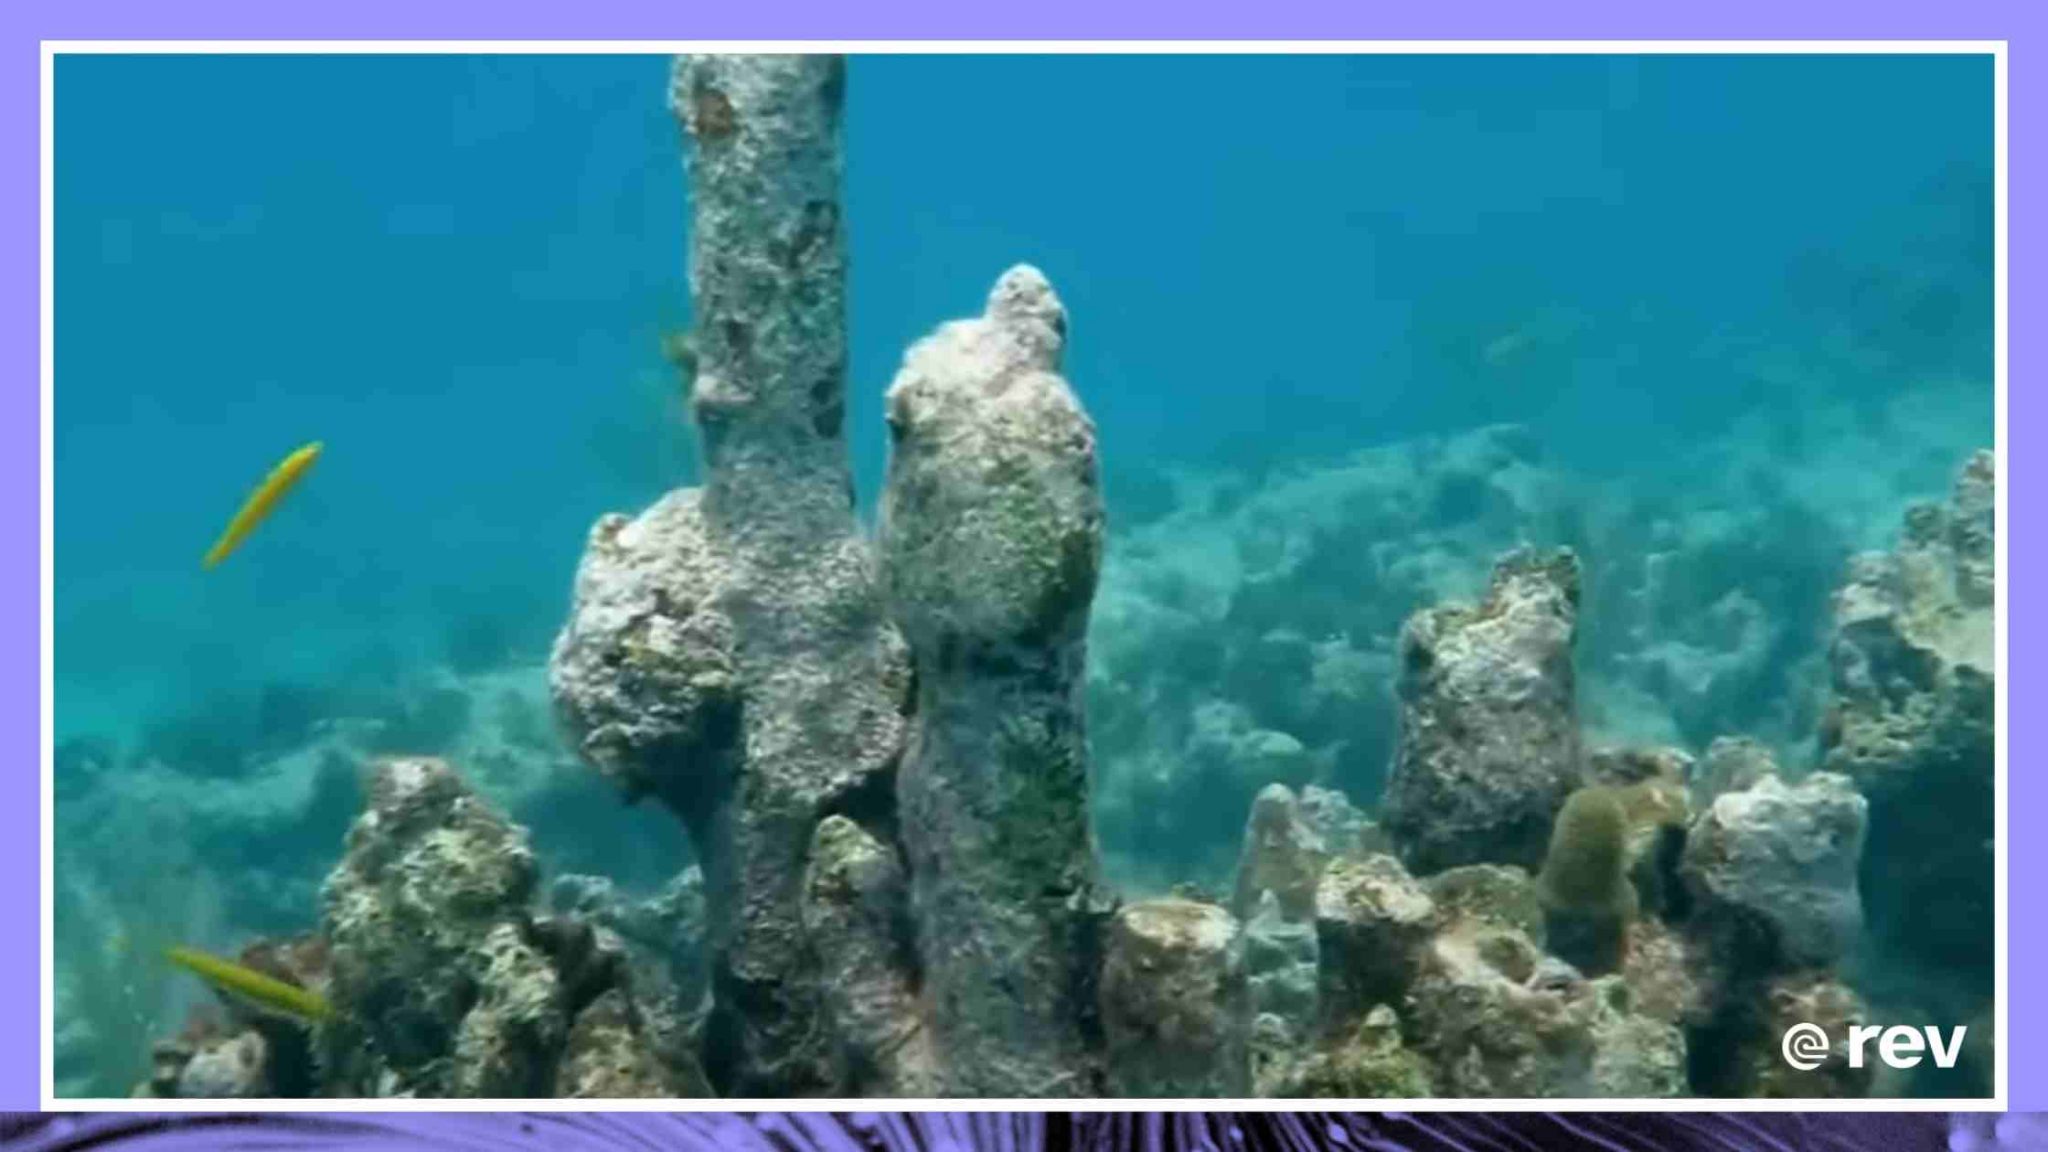 海洋生物学家忙于阻止一种致命的流行病毁灭珊瑚礁6月1日22